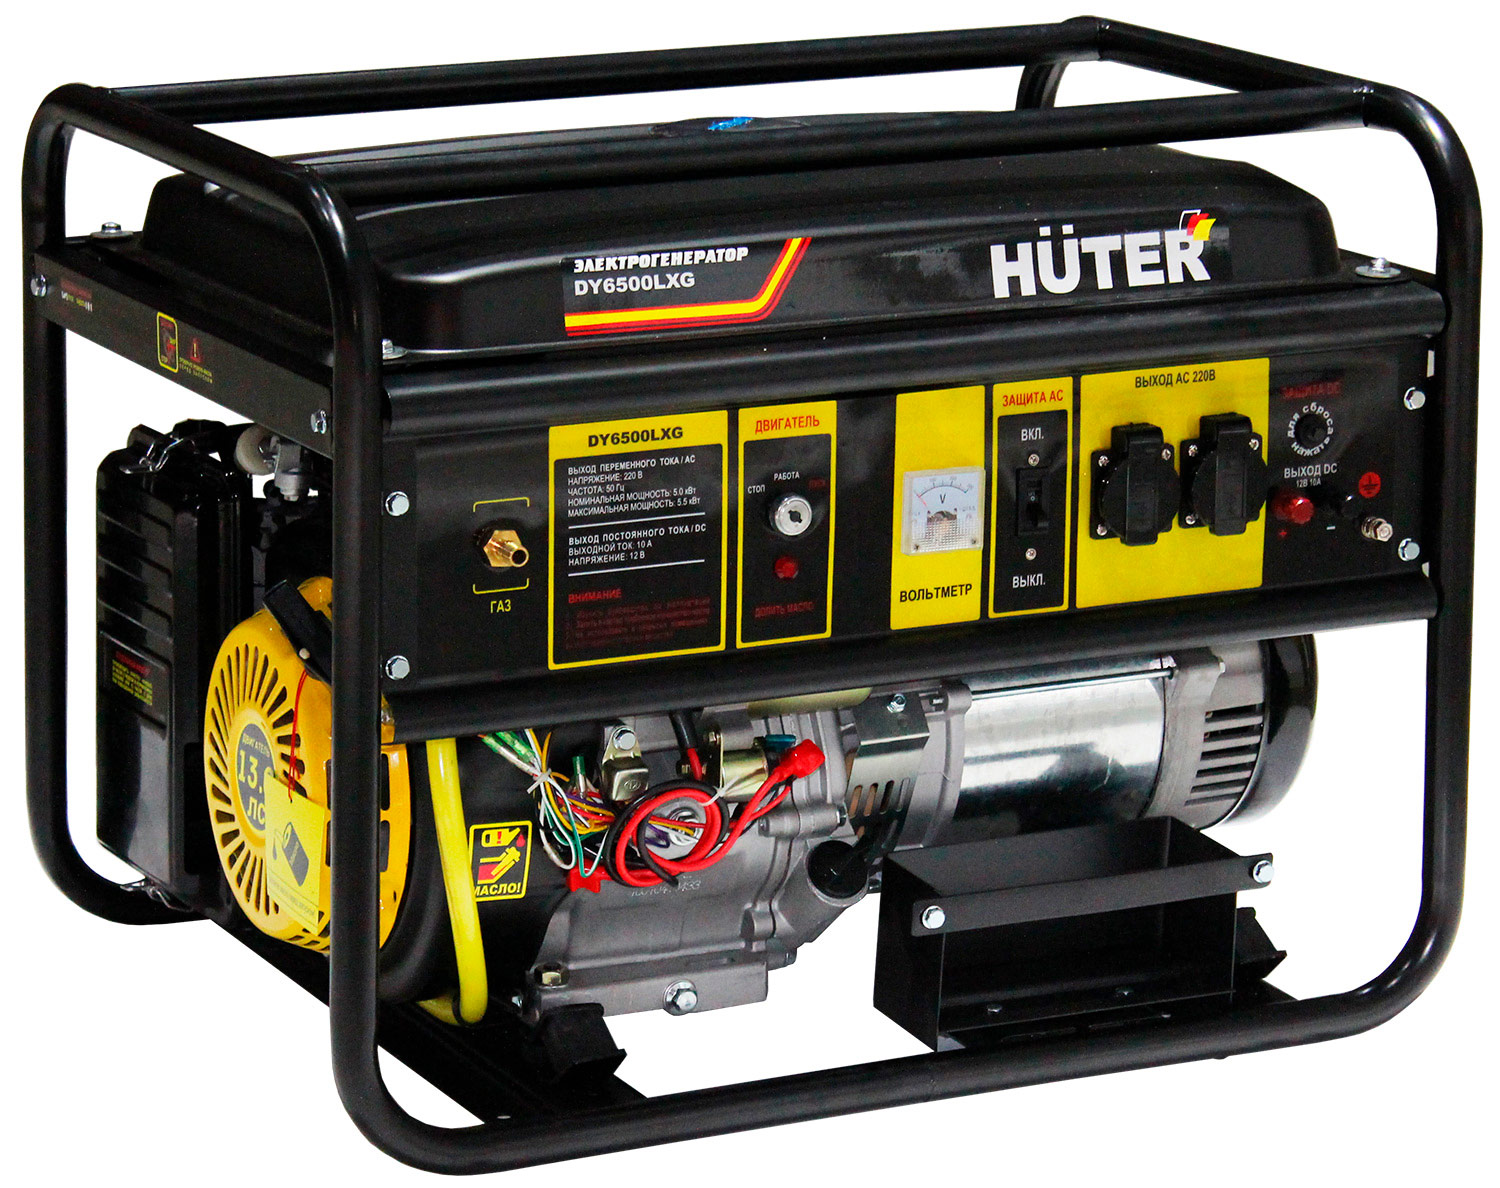 Электрический генератор и электростанция Huter DY6500LXG 64/1/32 электрический генератор и электростанция huter dy4000lx